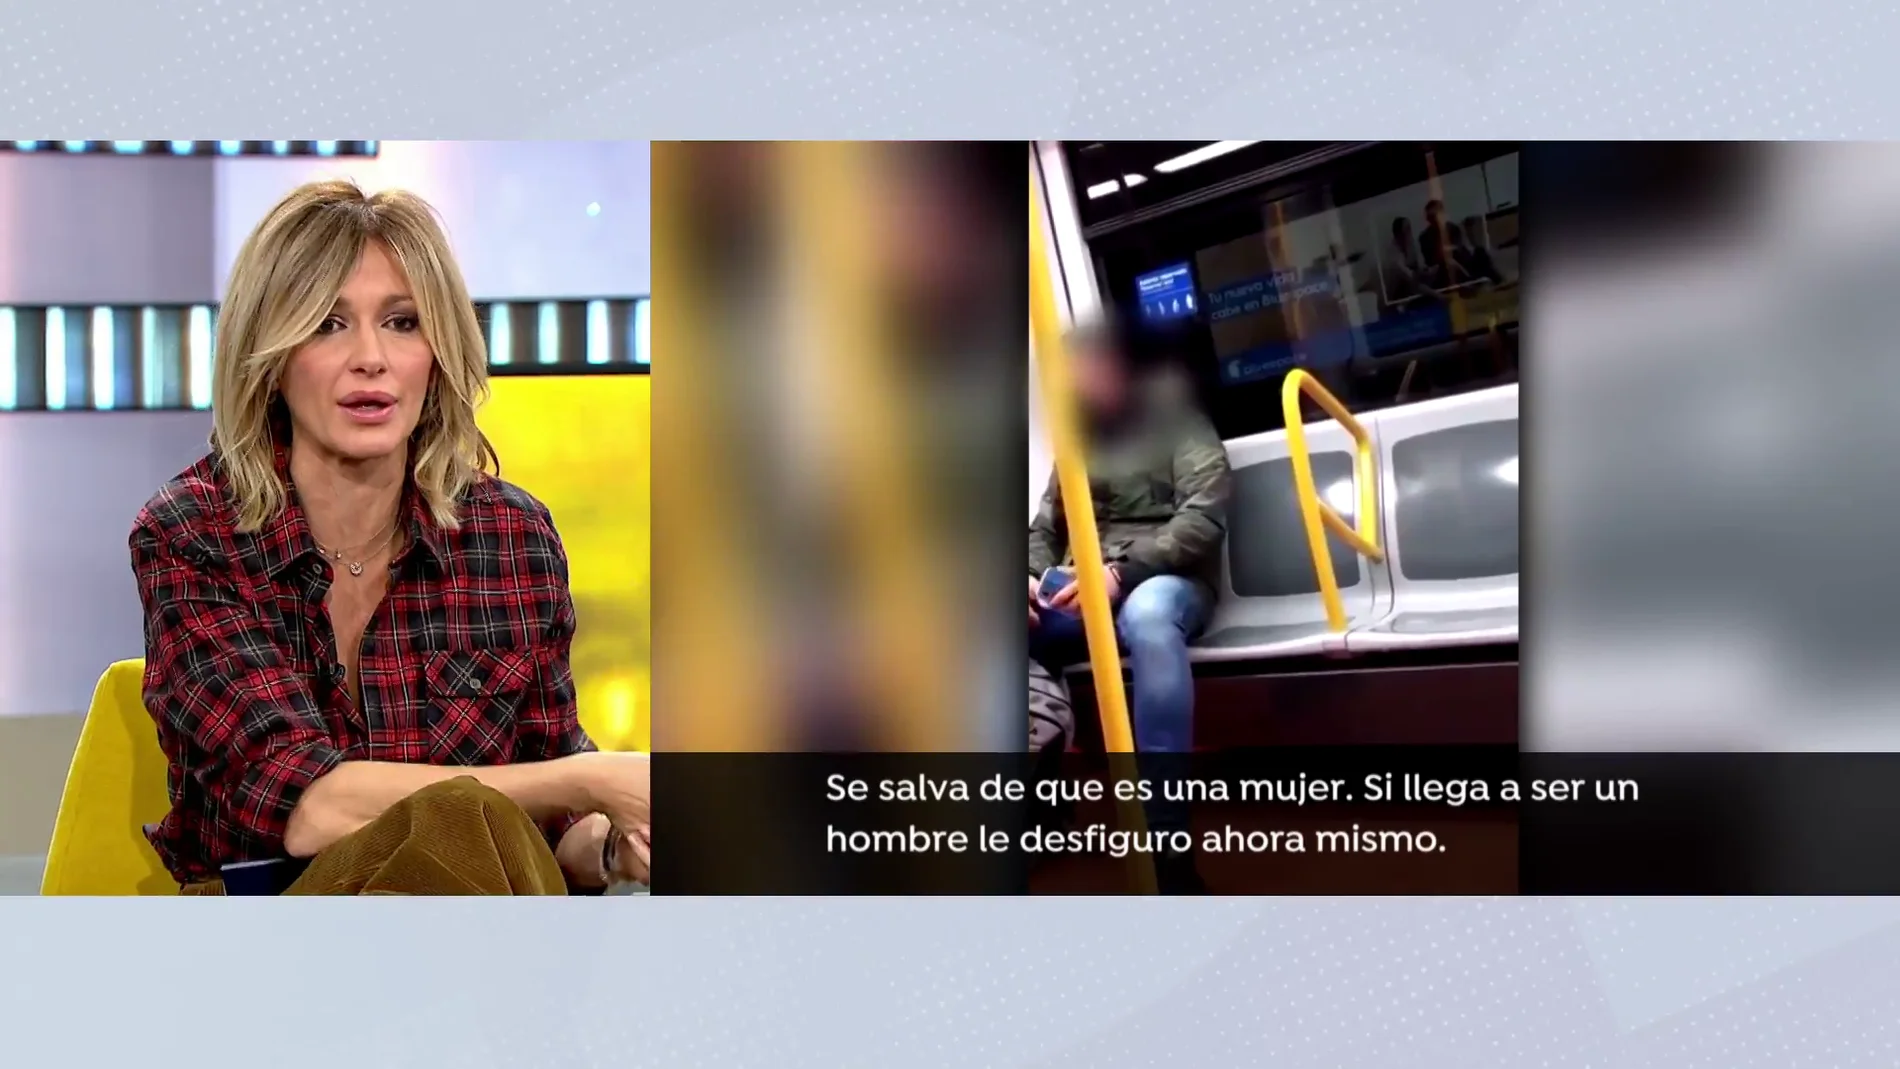 La reacción de Susanna Griso al ver la agresión racista en el metro: "Quitádmelas, no soporto verlo"